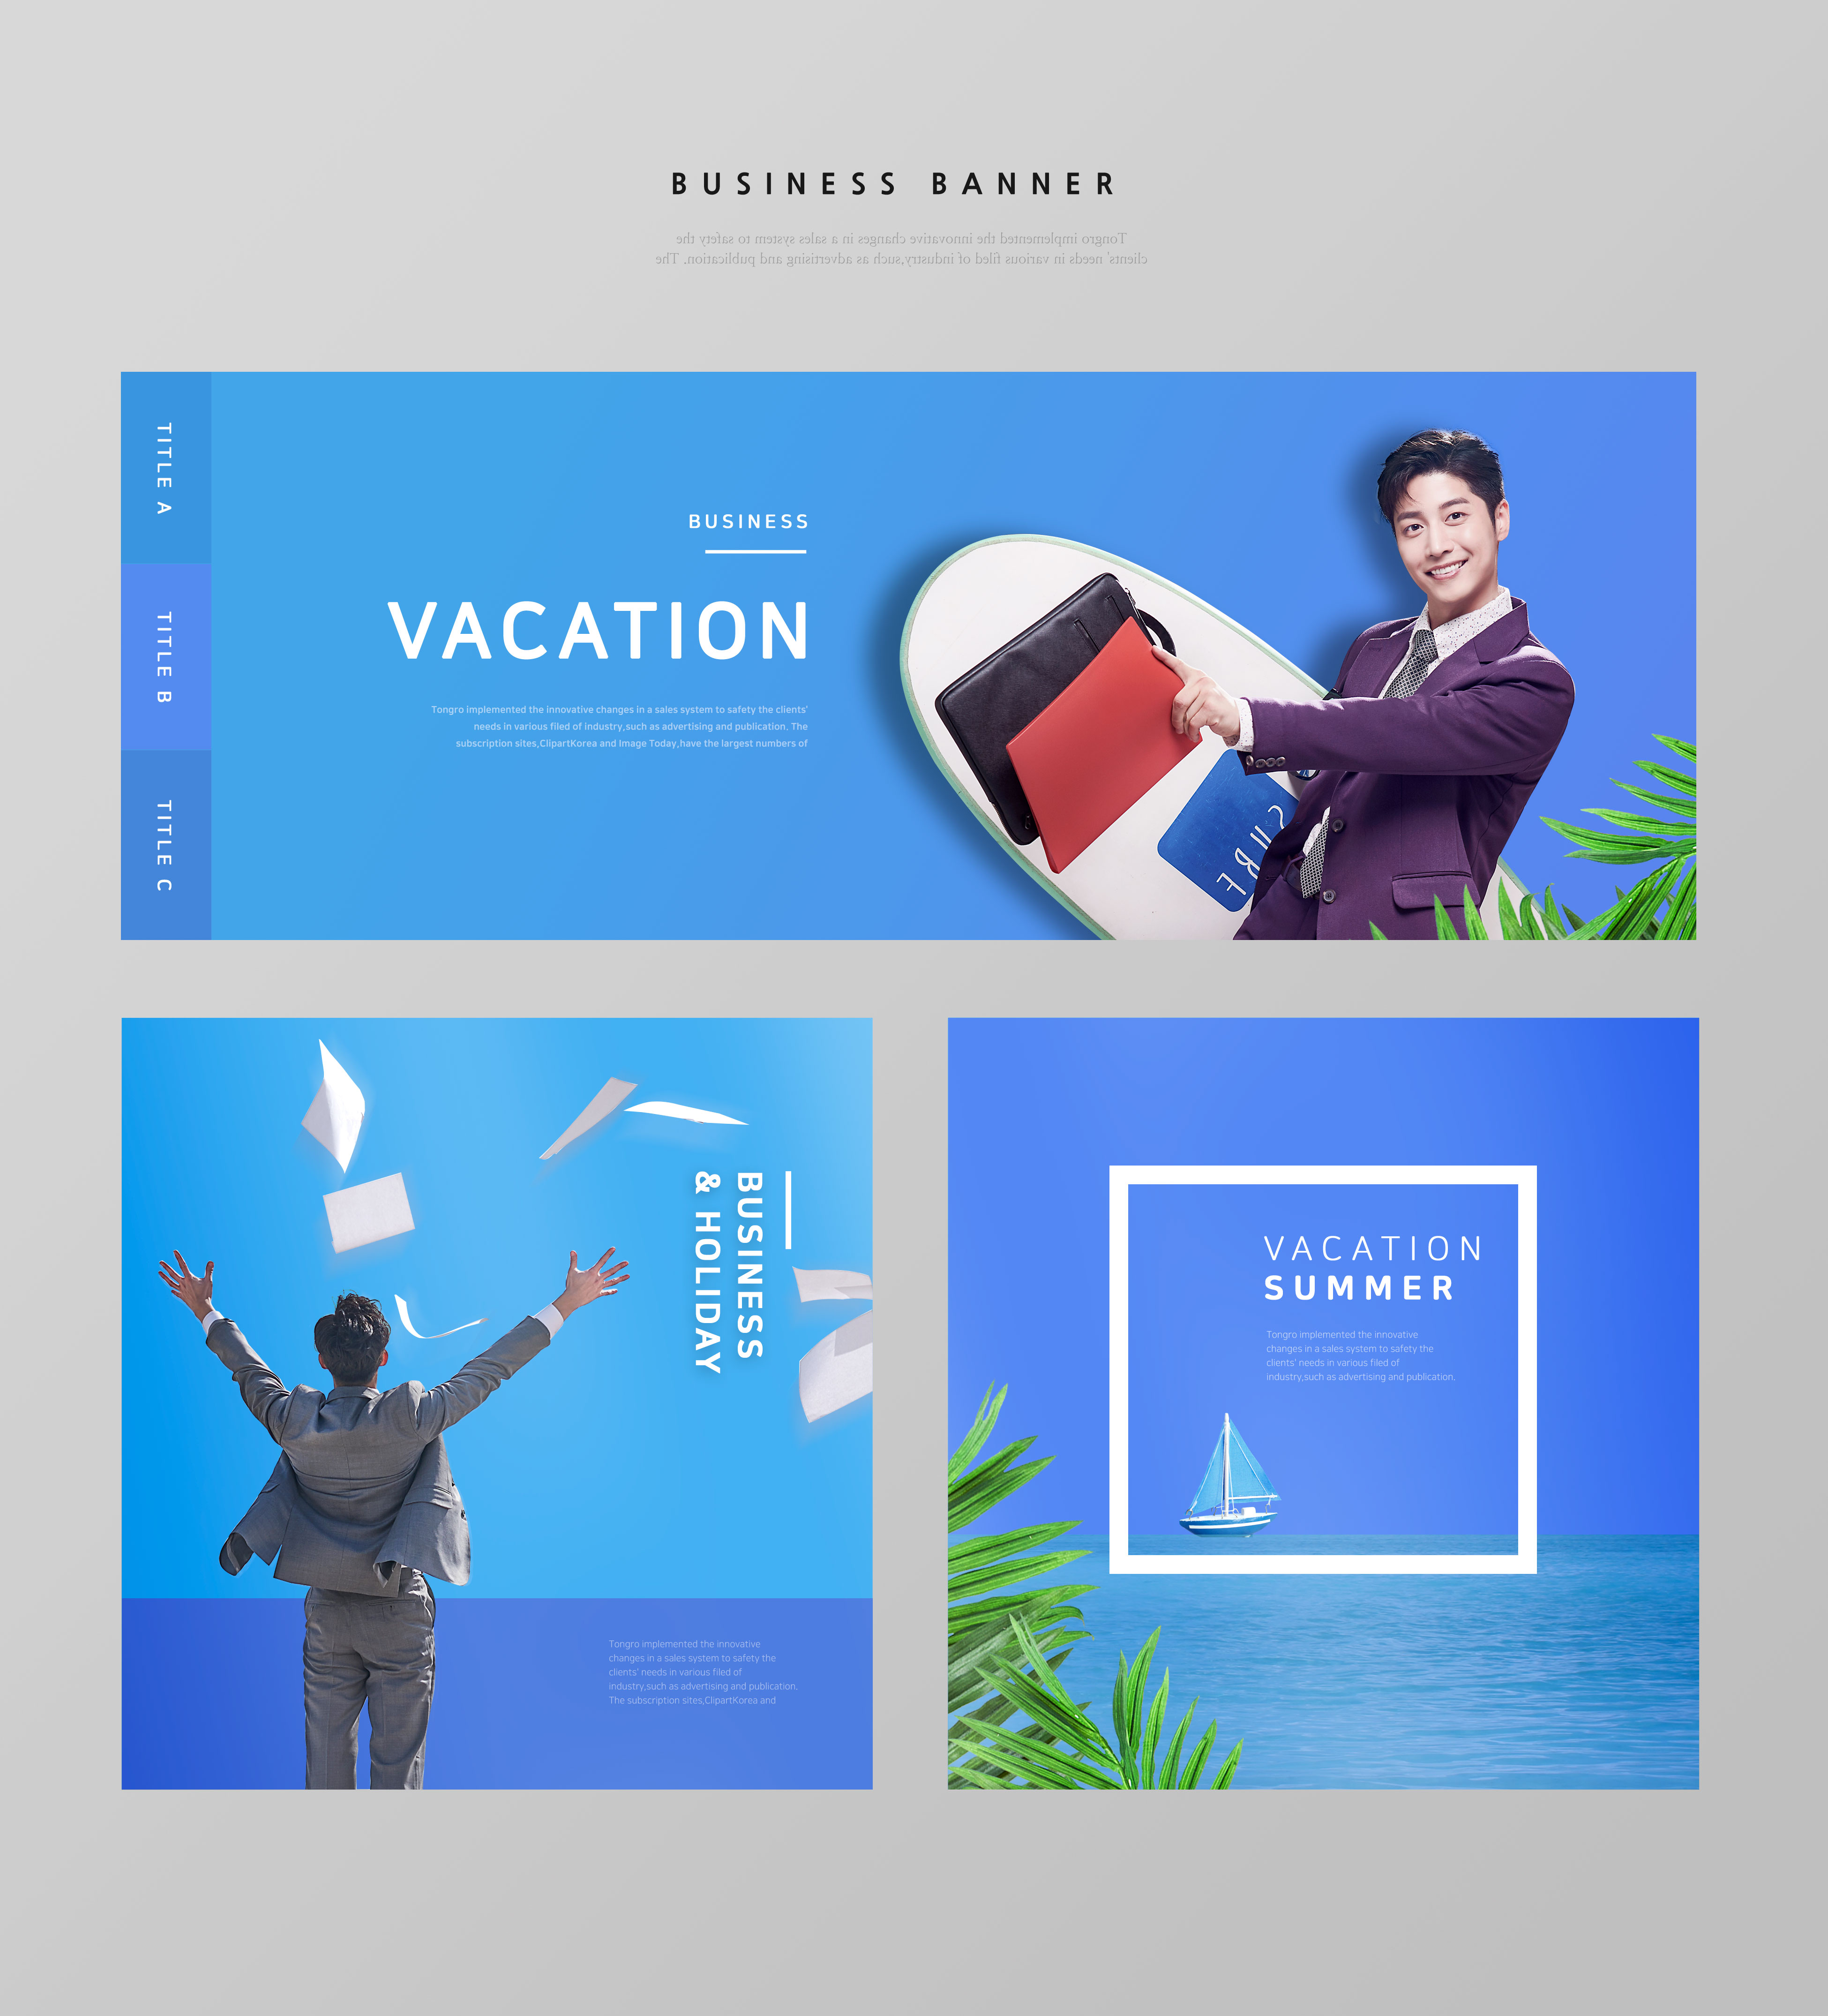 夏季暑假旅行蓝色主题Banner设计模板插图